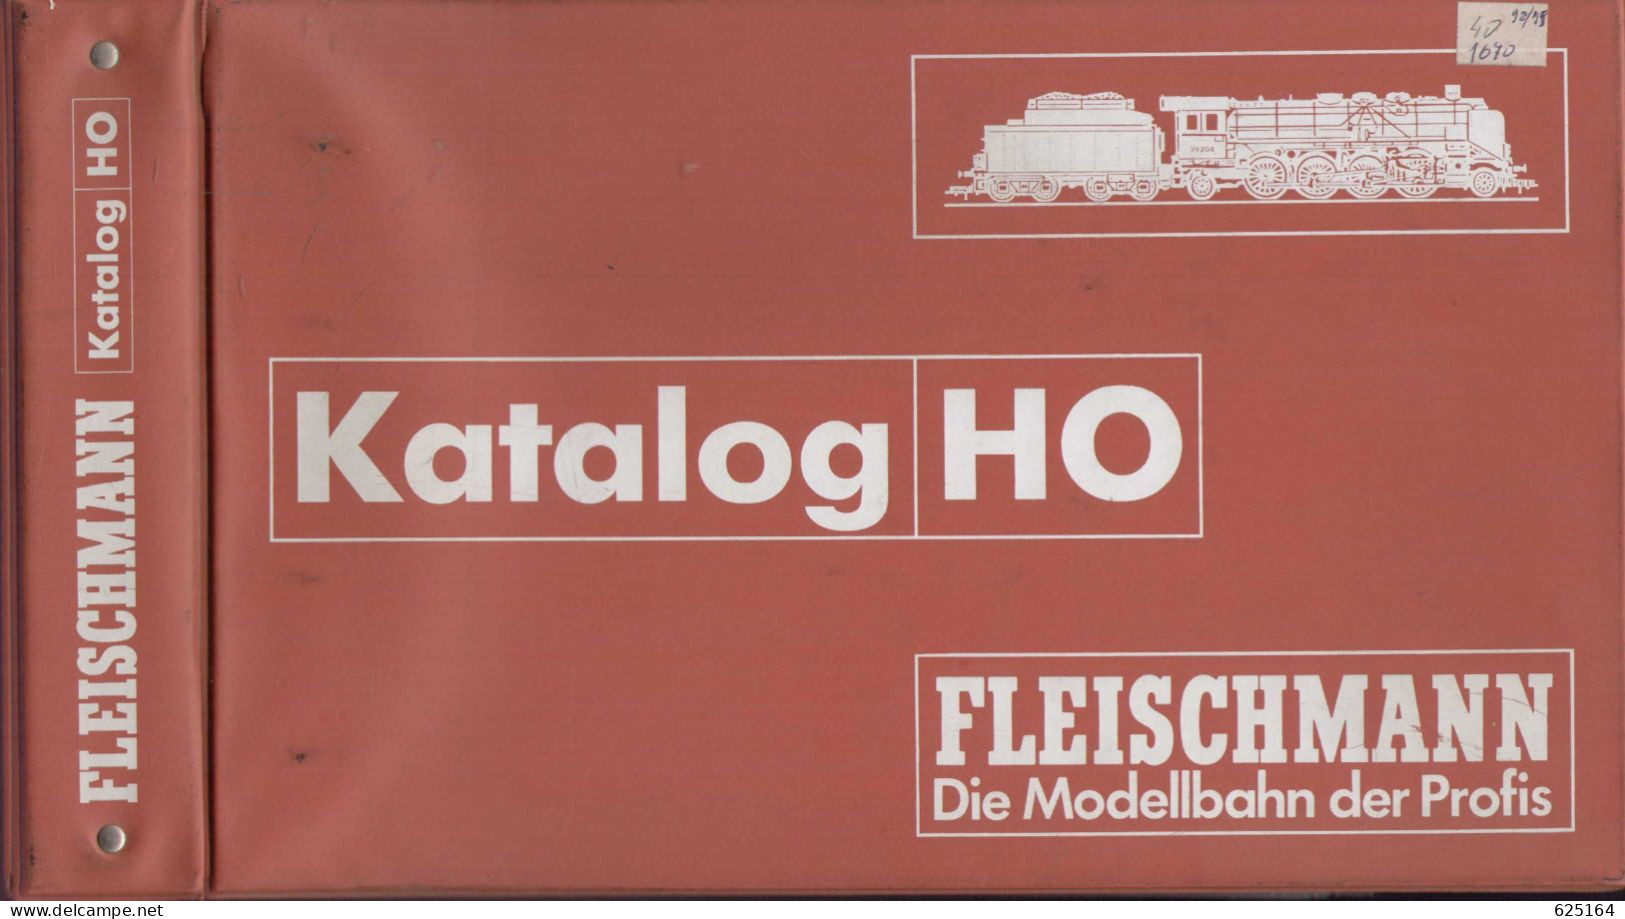 Catalogue FLEISCHMANN 1998/99 Händlerkatalog HO Die Modellbahn Der Profis Mit Original Ordner - Duits